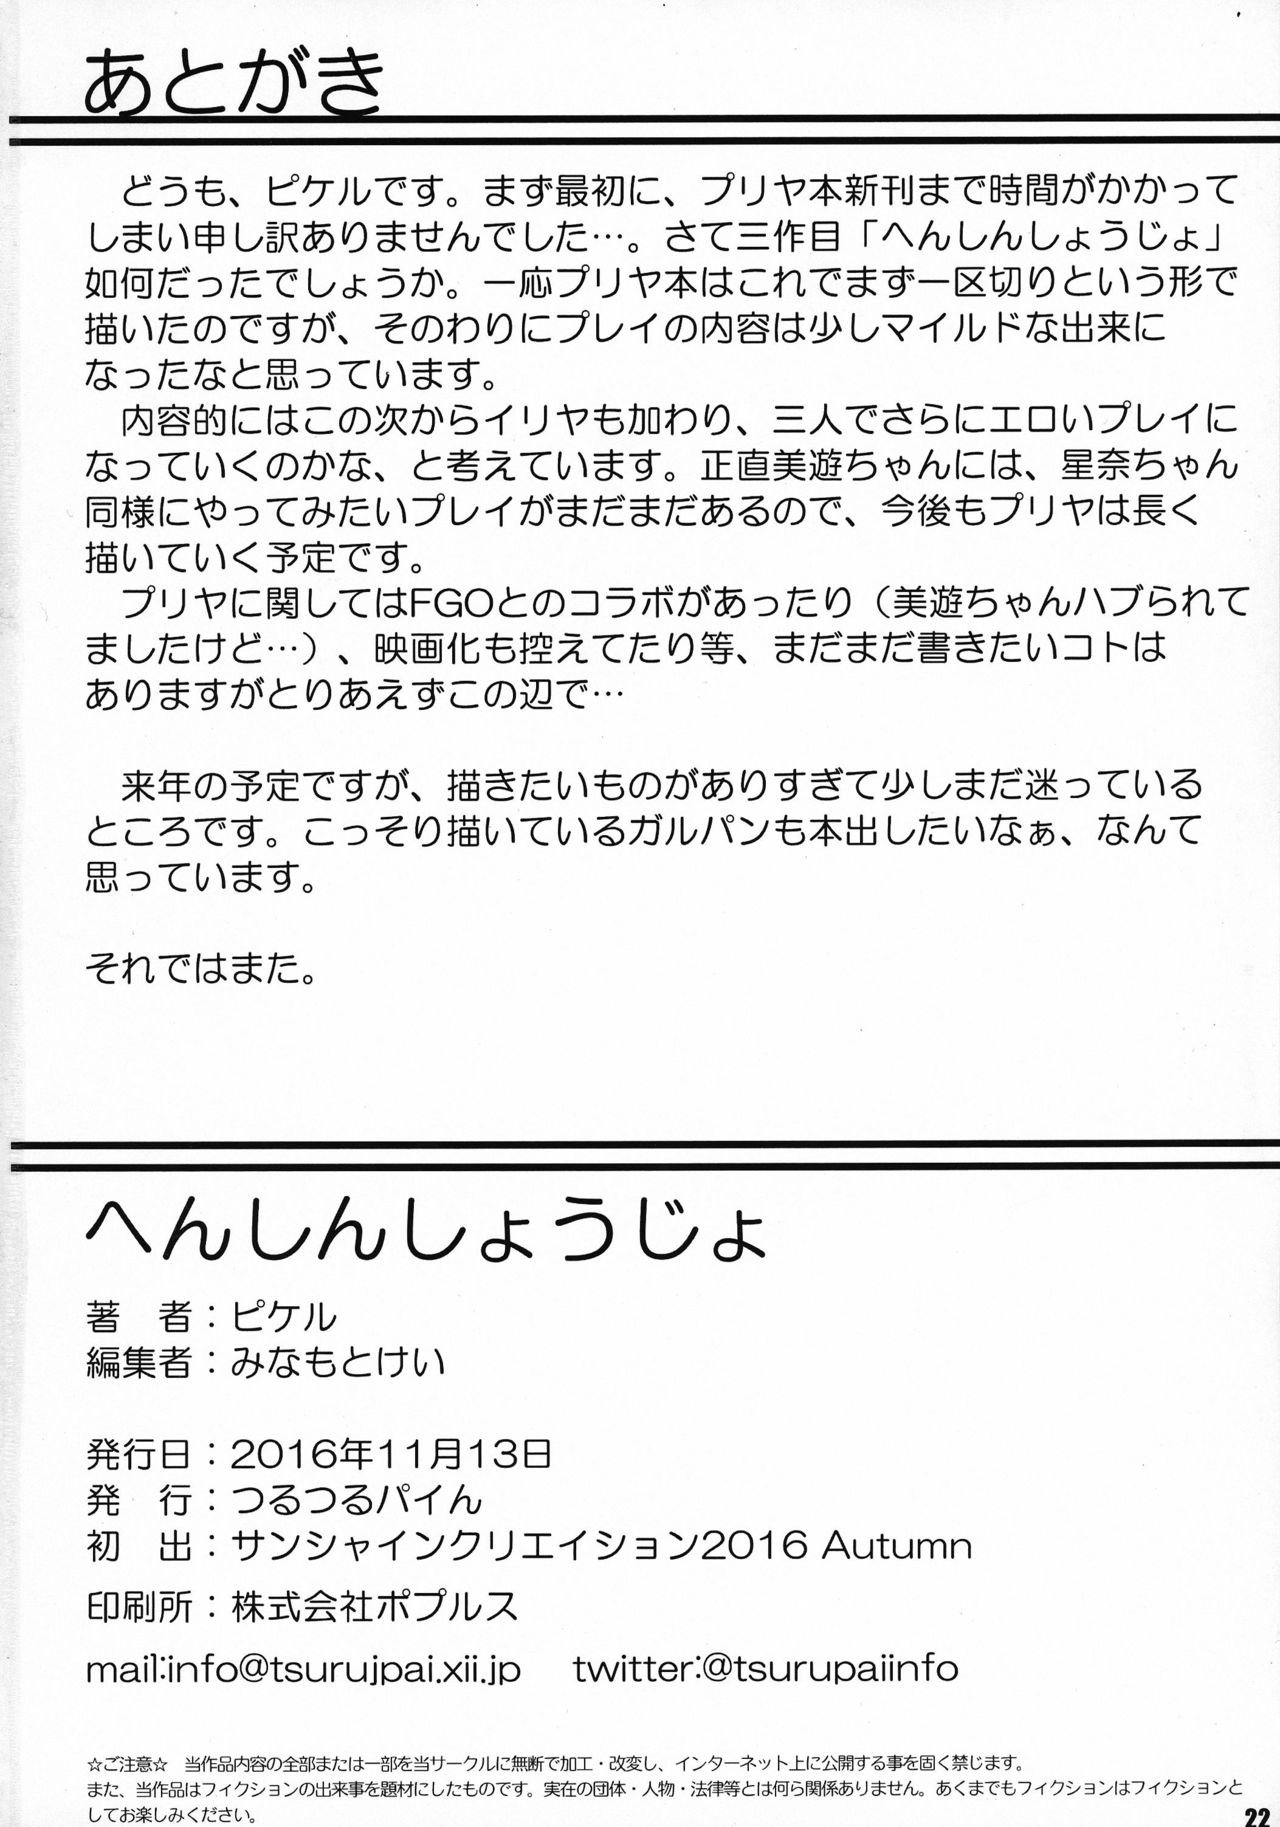 (サンクリ2016 Autumn) [つるつるパイん (ピケル)] へんしんしょうじょ (Fate/kaleid liner プリズマ☆イリヤ)